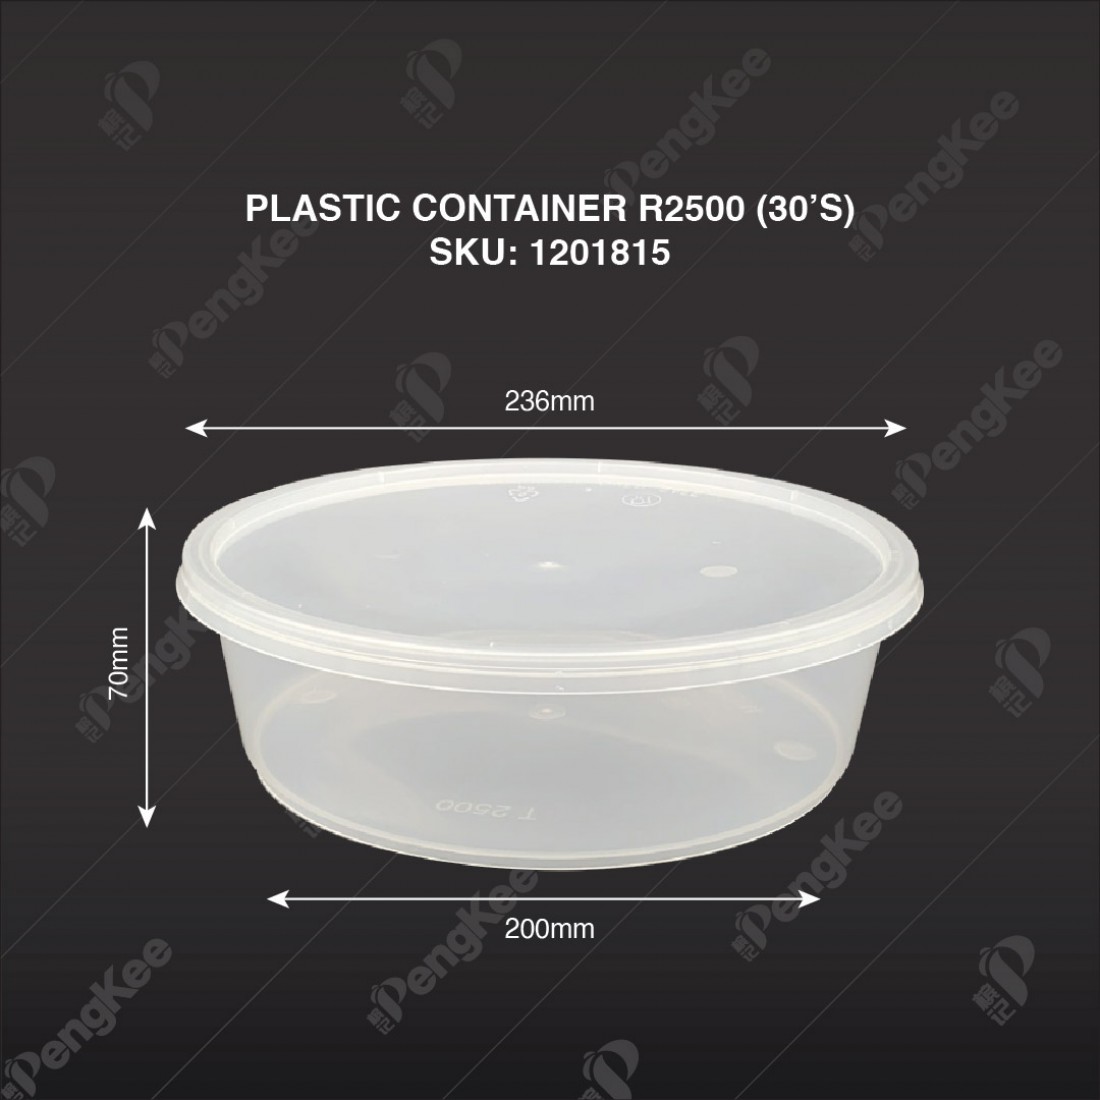 PLASTIC CONTAINER R2500 (ROUND CONTAINER)